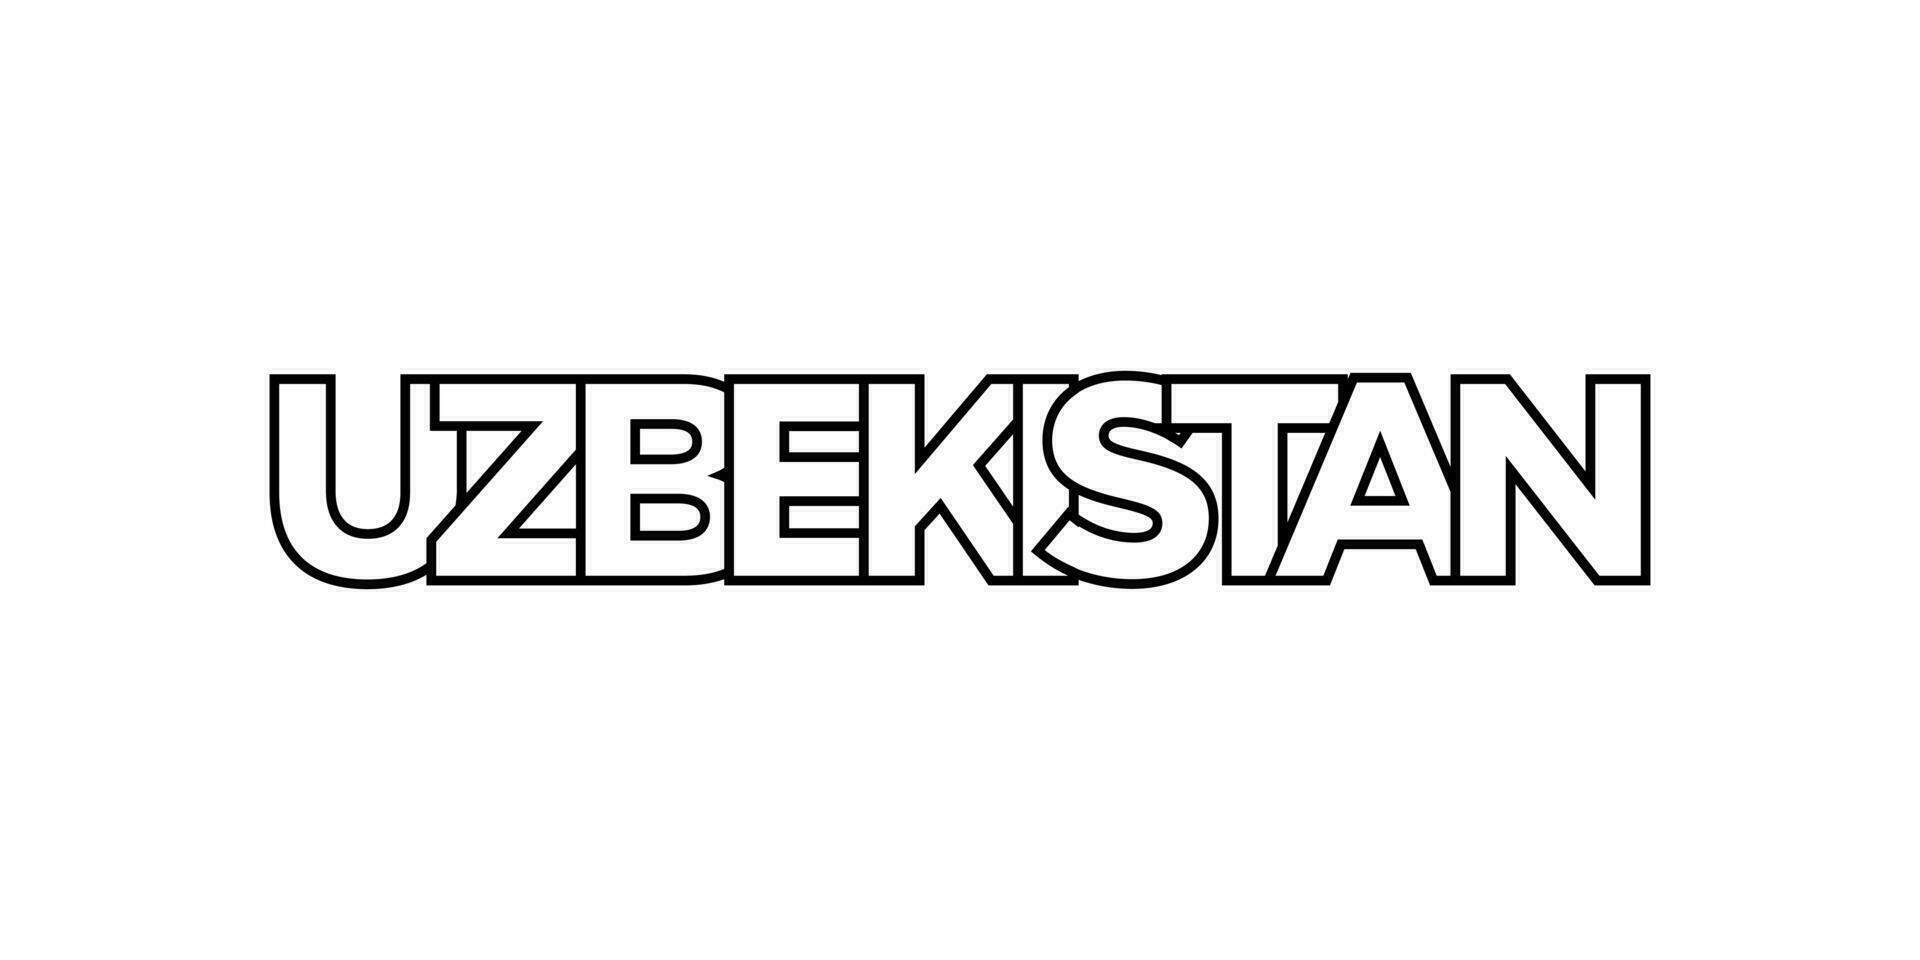 Oezbekistan embleem. de ontwerp Kenmerken een meetkundig stijl, vector illustratie met stoutmoedig typografie in een modern lettertype. de grafisch leuze belettering.